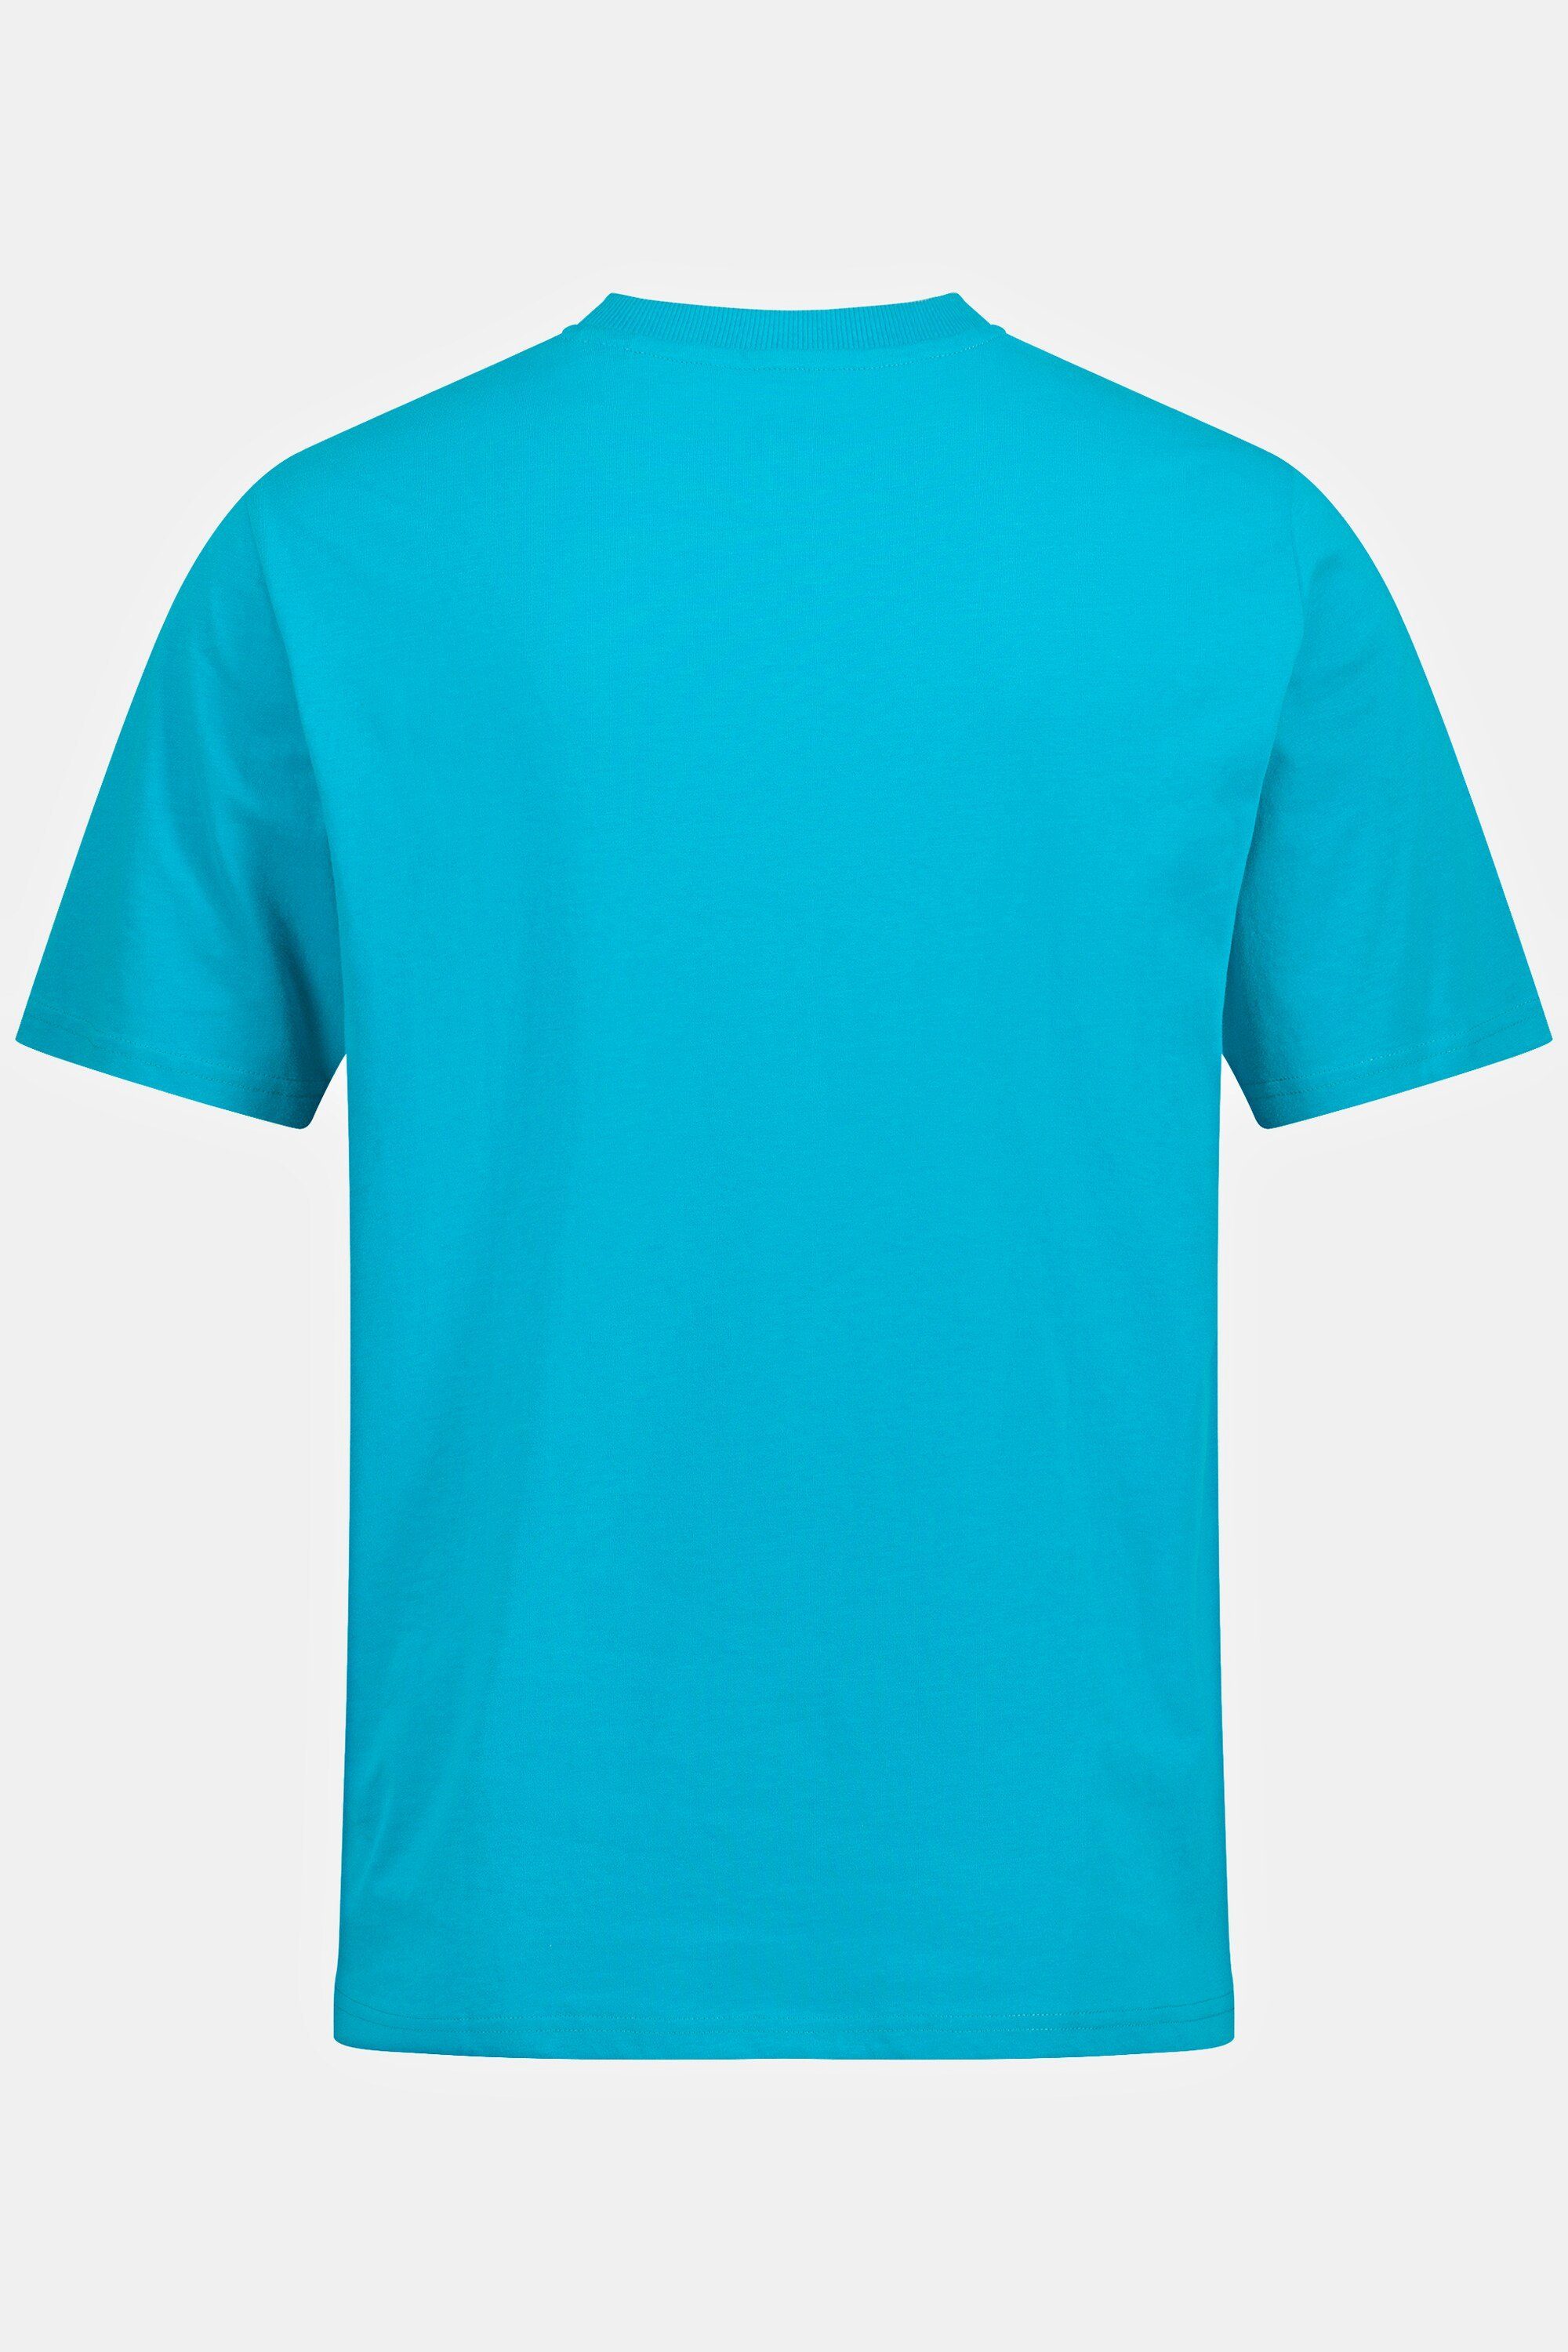 Basic Halbarm Knopfleiste Henley JP1880 dunkles türkis T-Shirt